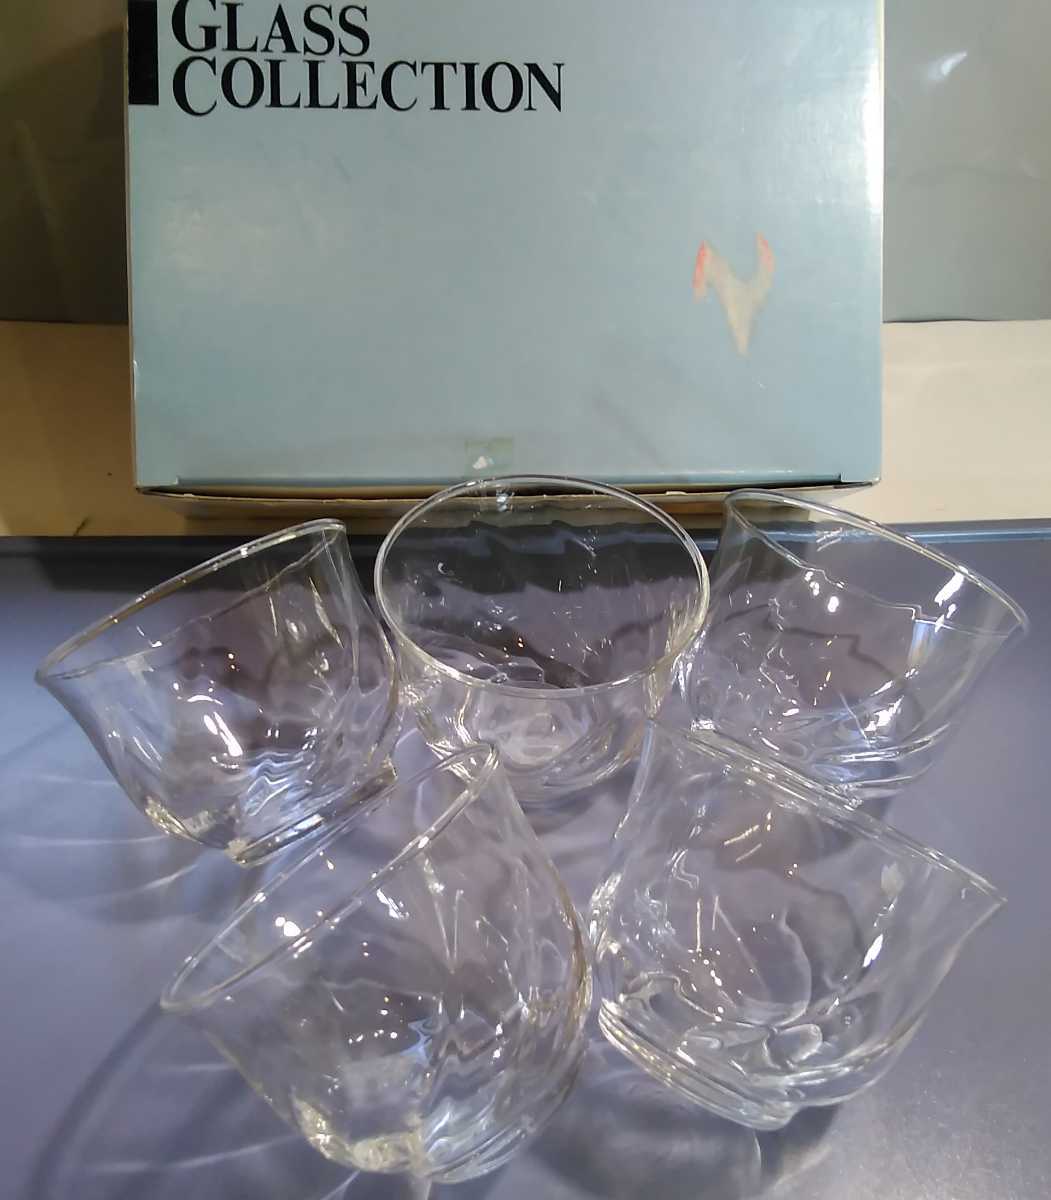 モール冷茶 ５客セット ◆ガラス器 冷茶グラス◆ 日本製 グラス コレクション 未使用_画像1